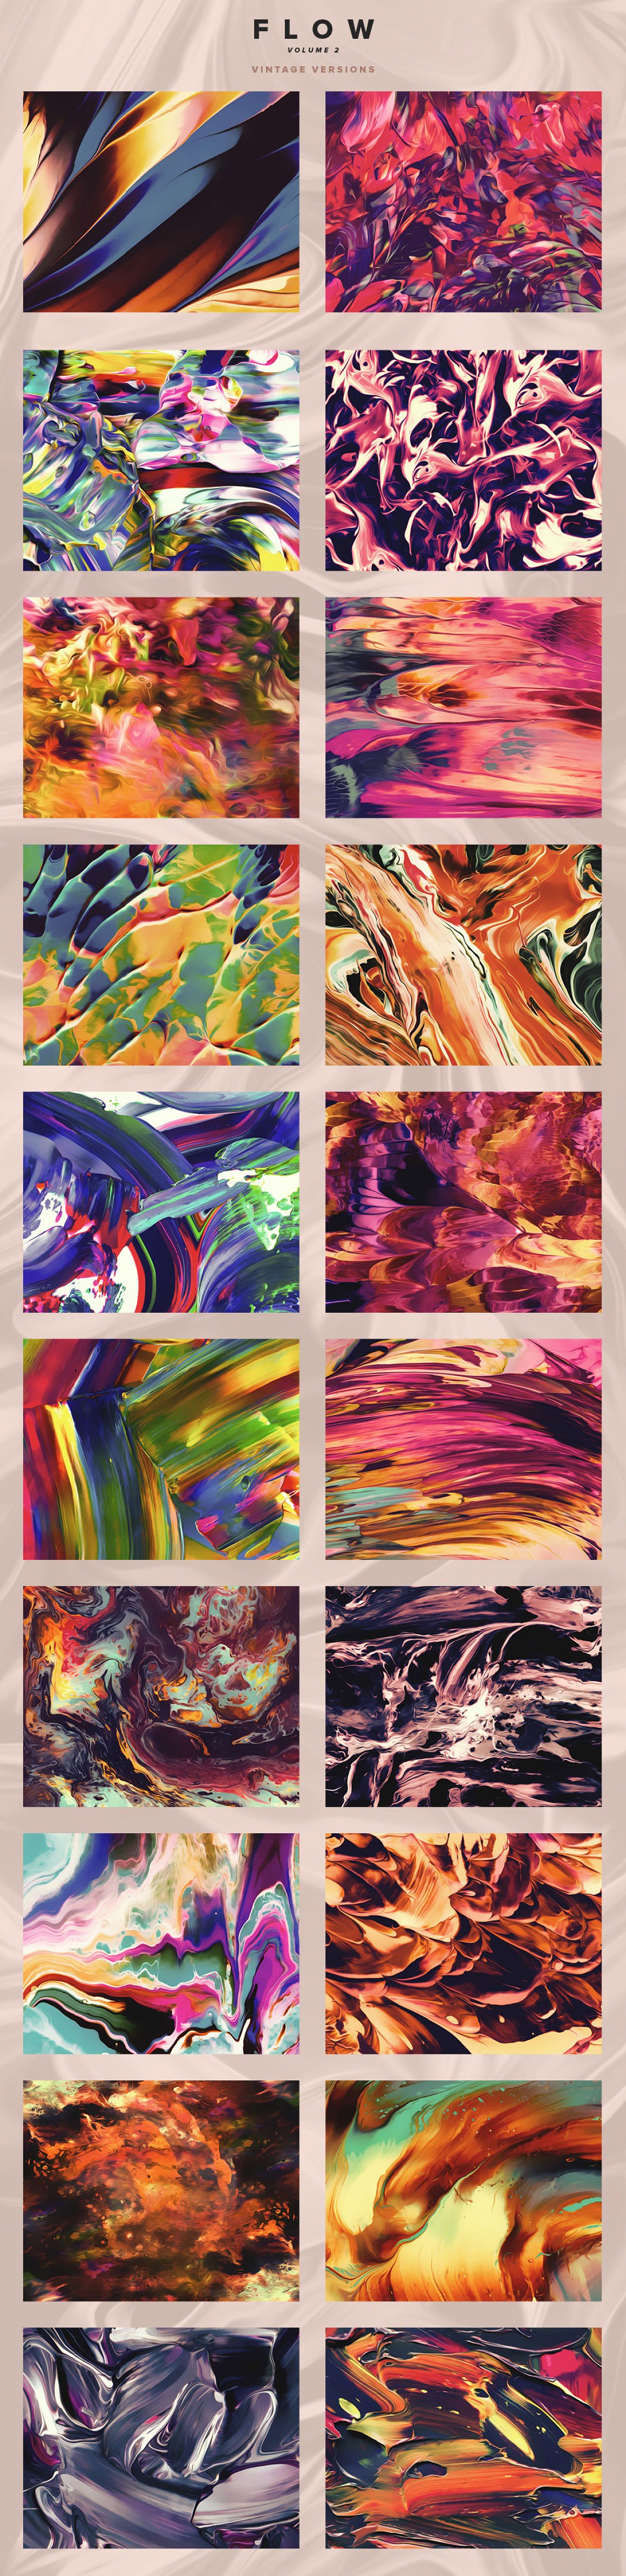 100幅高分辨率抽象流体颜料油漆液体纹理背景素材 Flow,